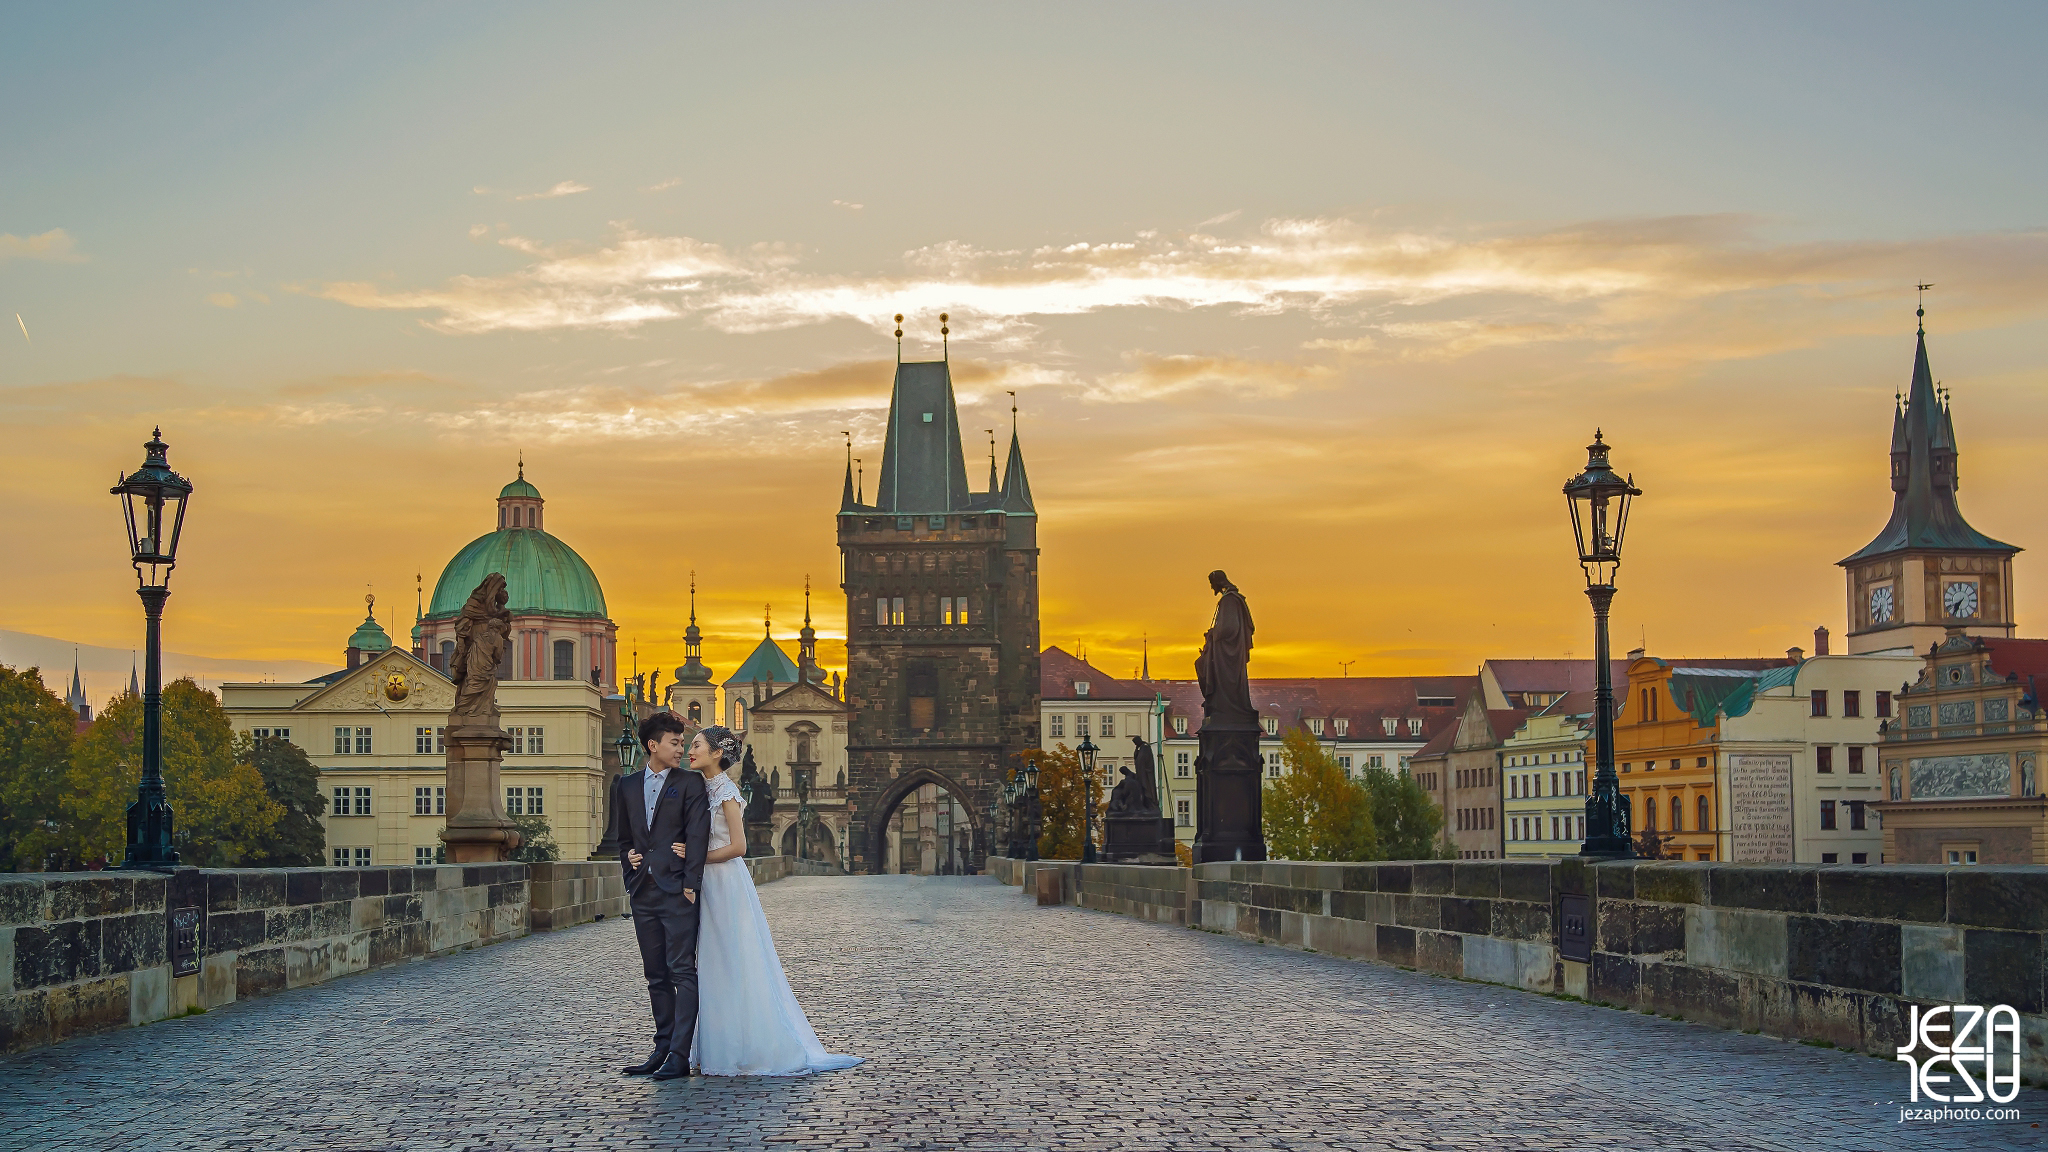 2016 JEZA European to2016 JEZA European tour travel schedule Prague Pre Wedding by Jeza Photographyur travel schedule